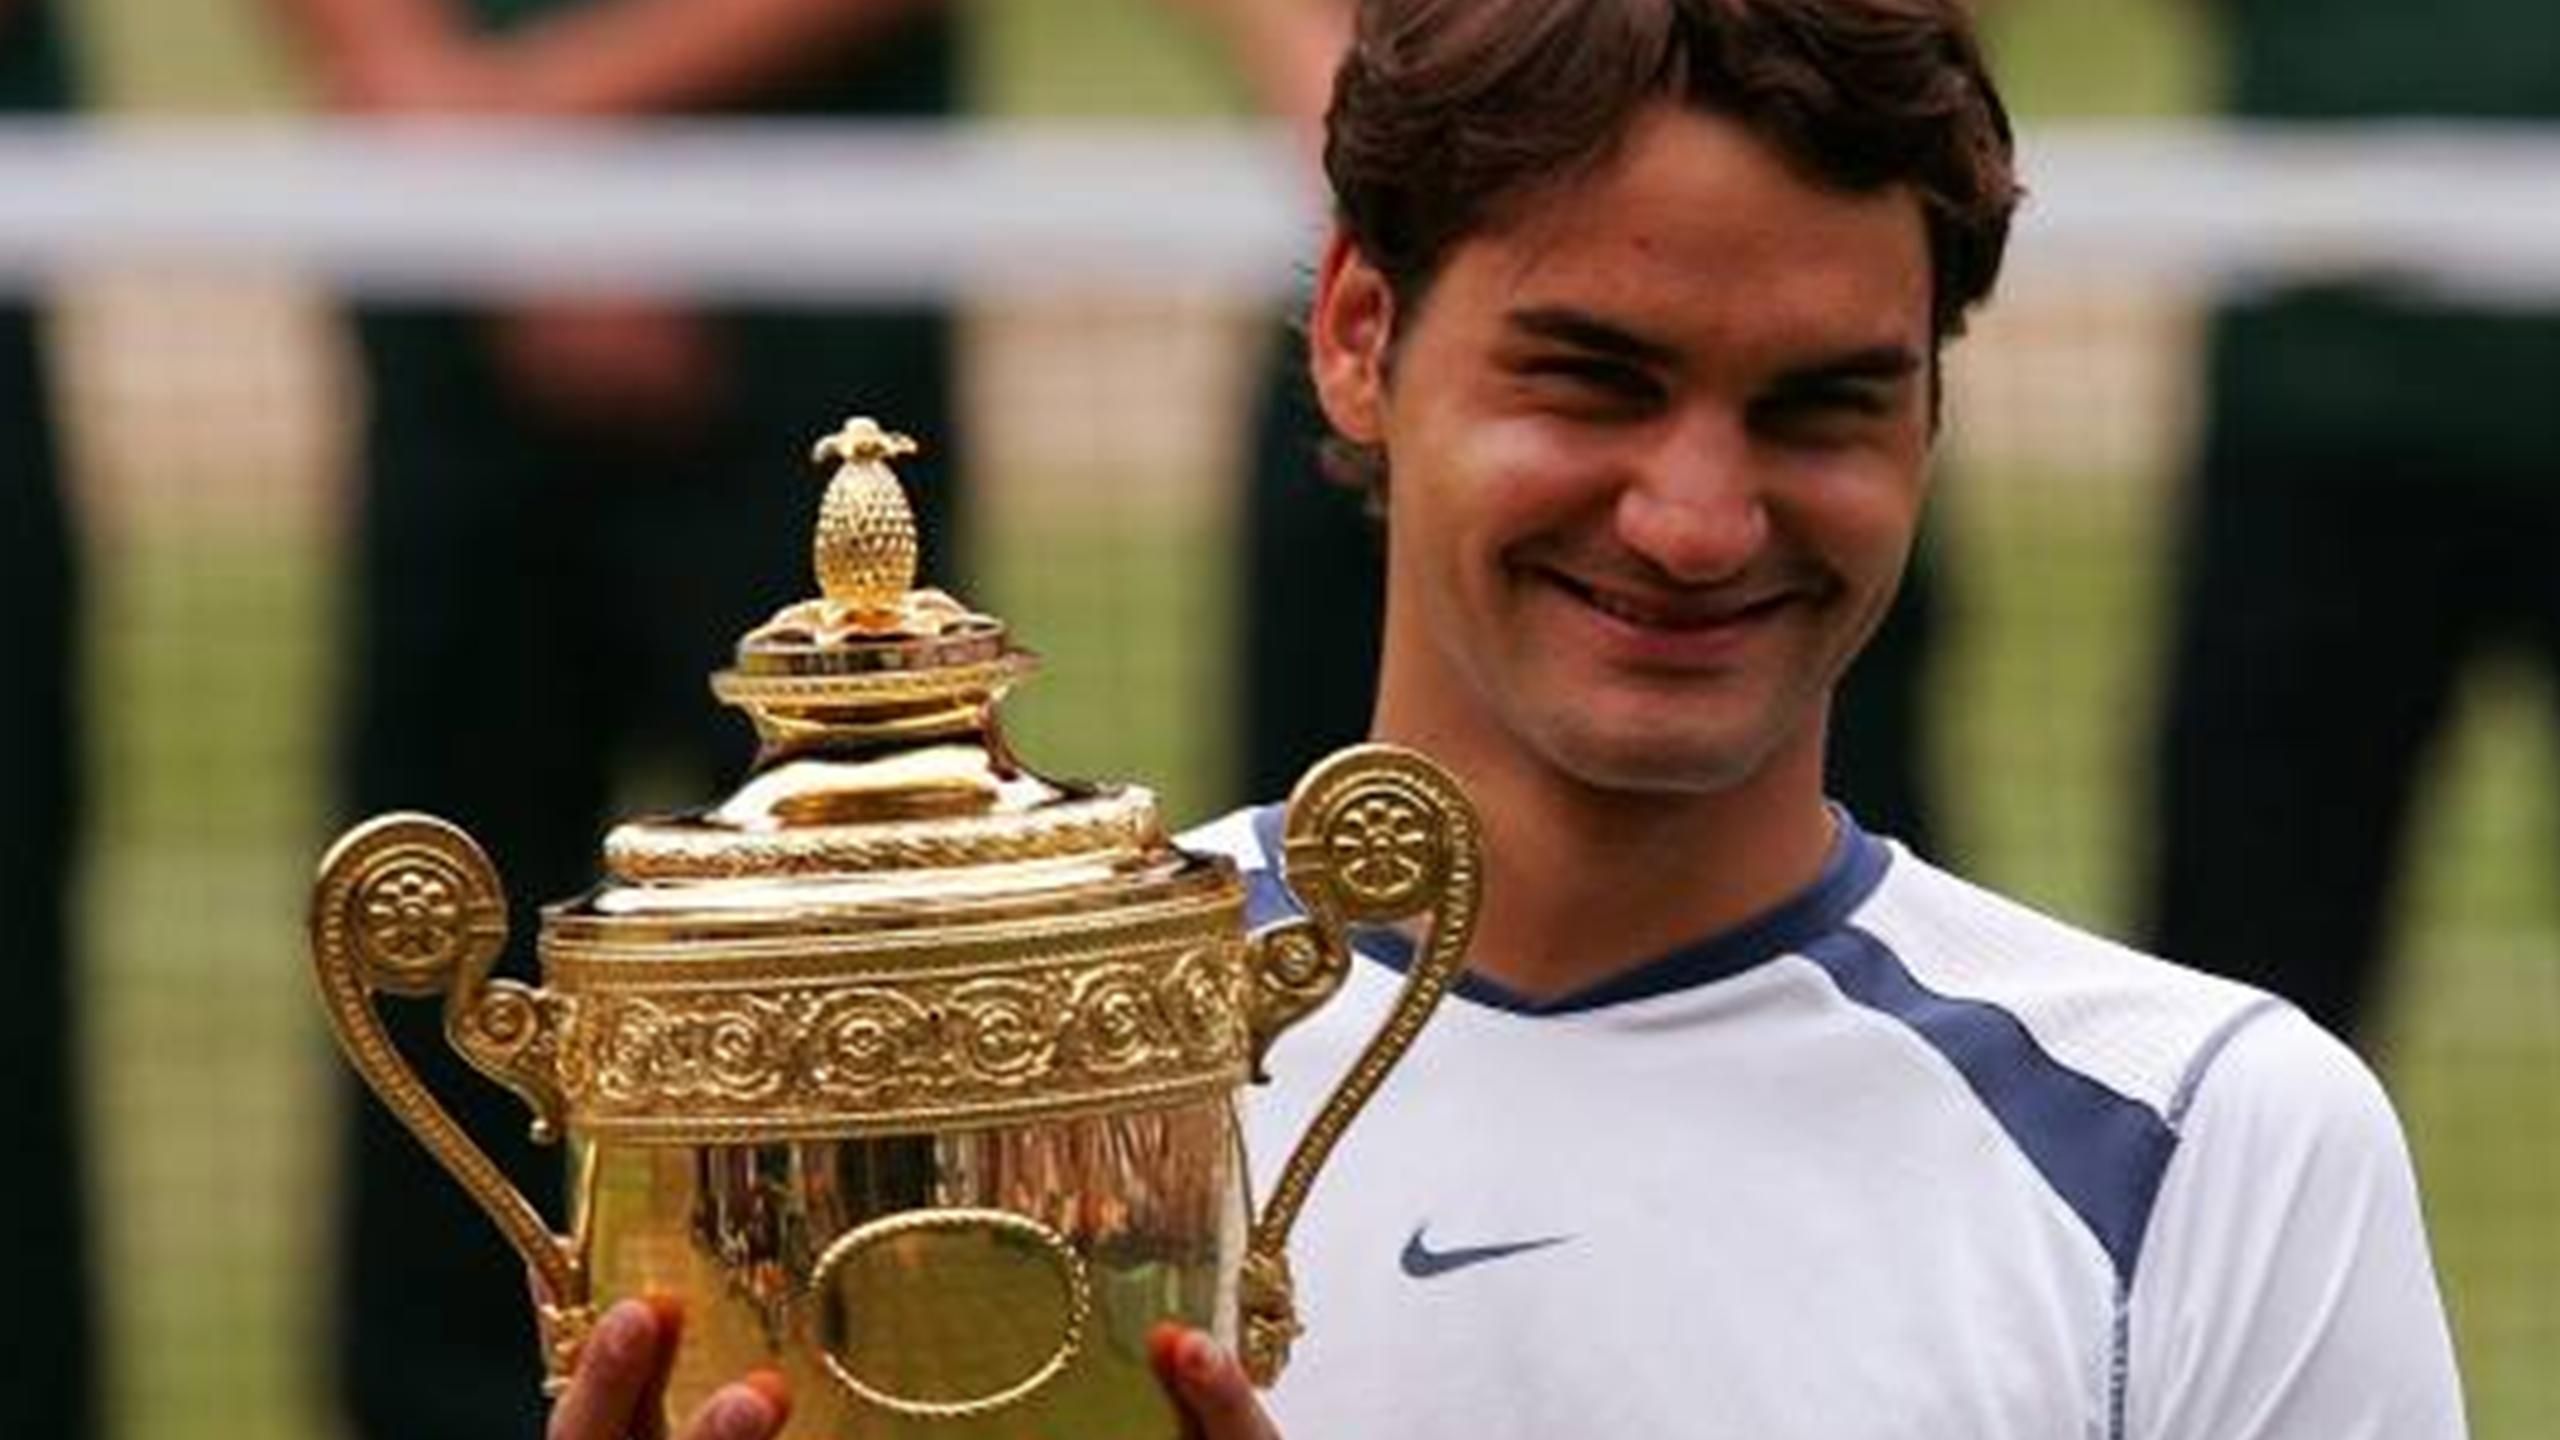 Hilsen sokker Tænk fremad Federer versus past master - Eurosport